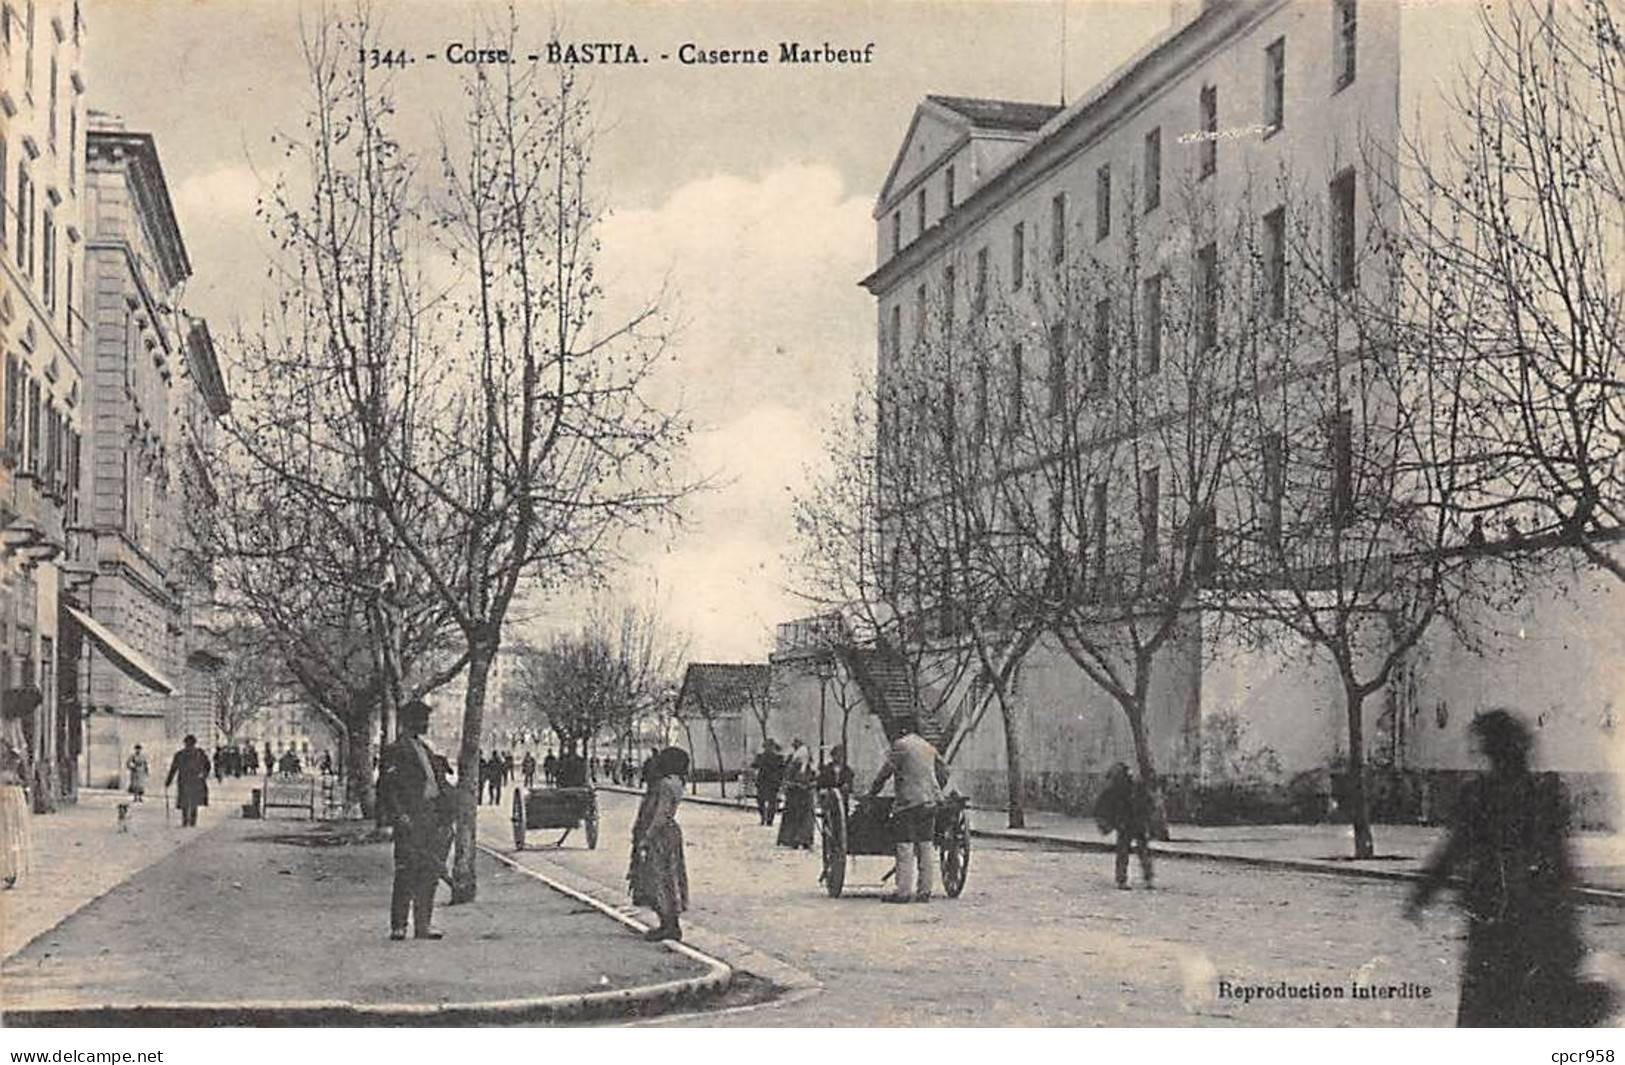 20 - BASTIA - SAN52471 - Caserne Marbeuf - Bastia